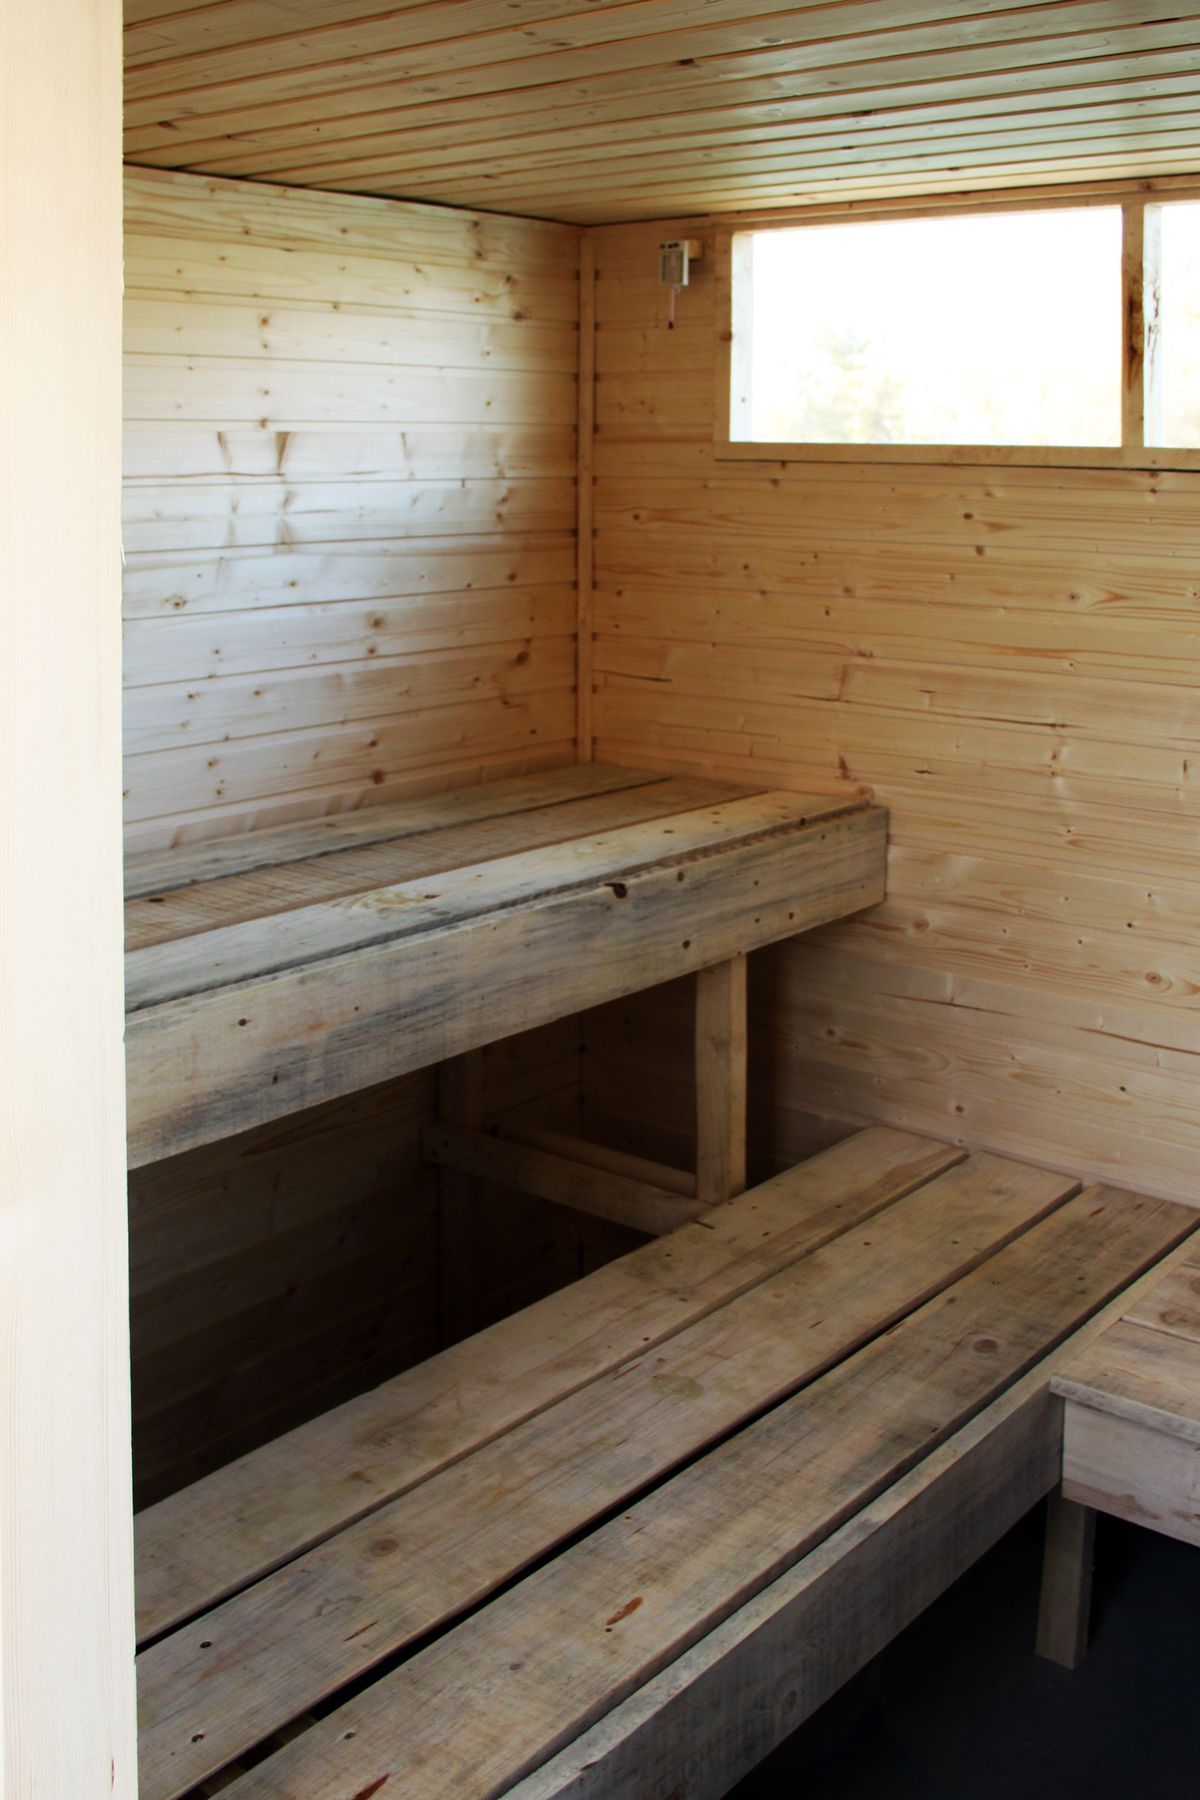 Netradiční sauny a lázně